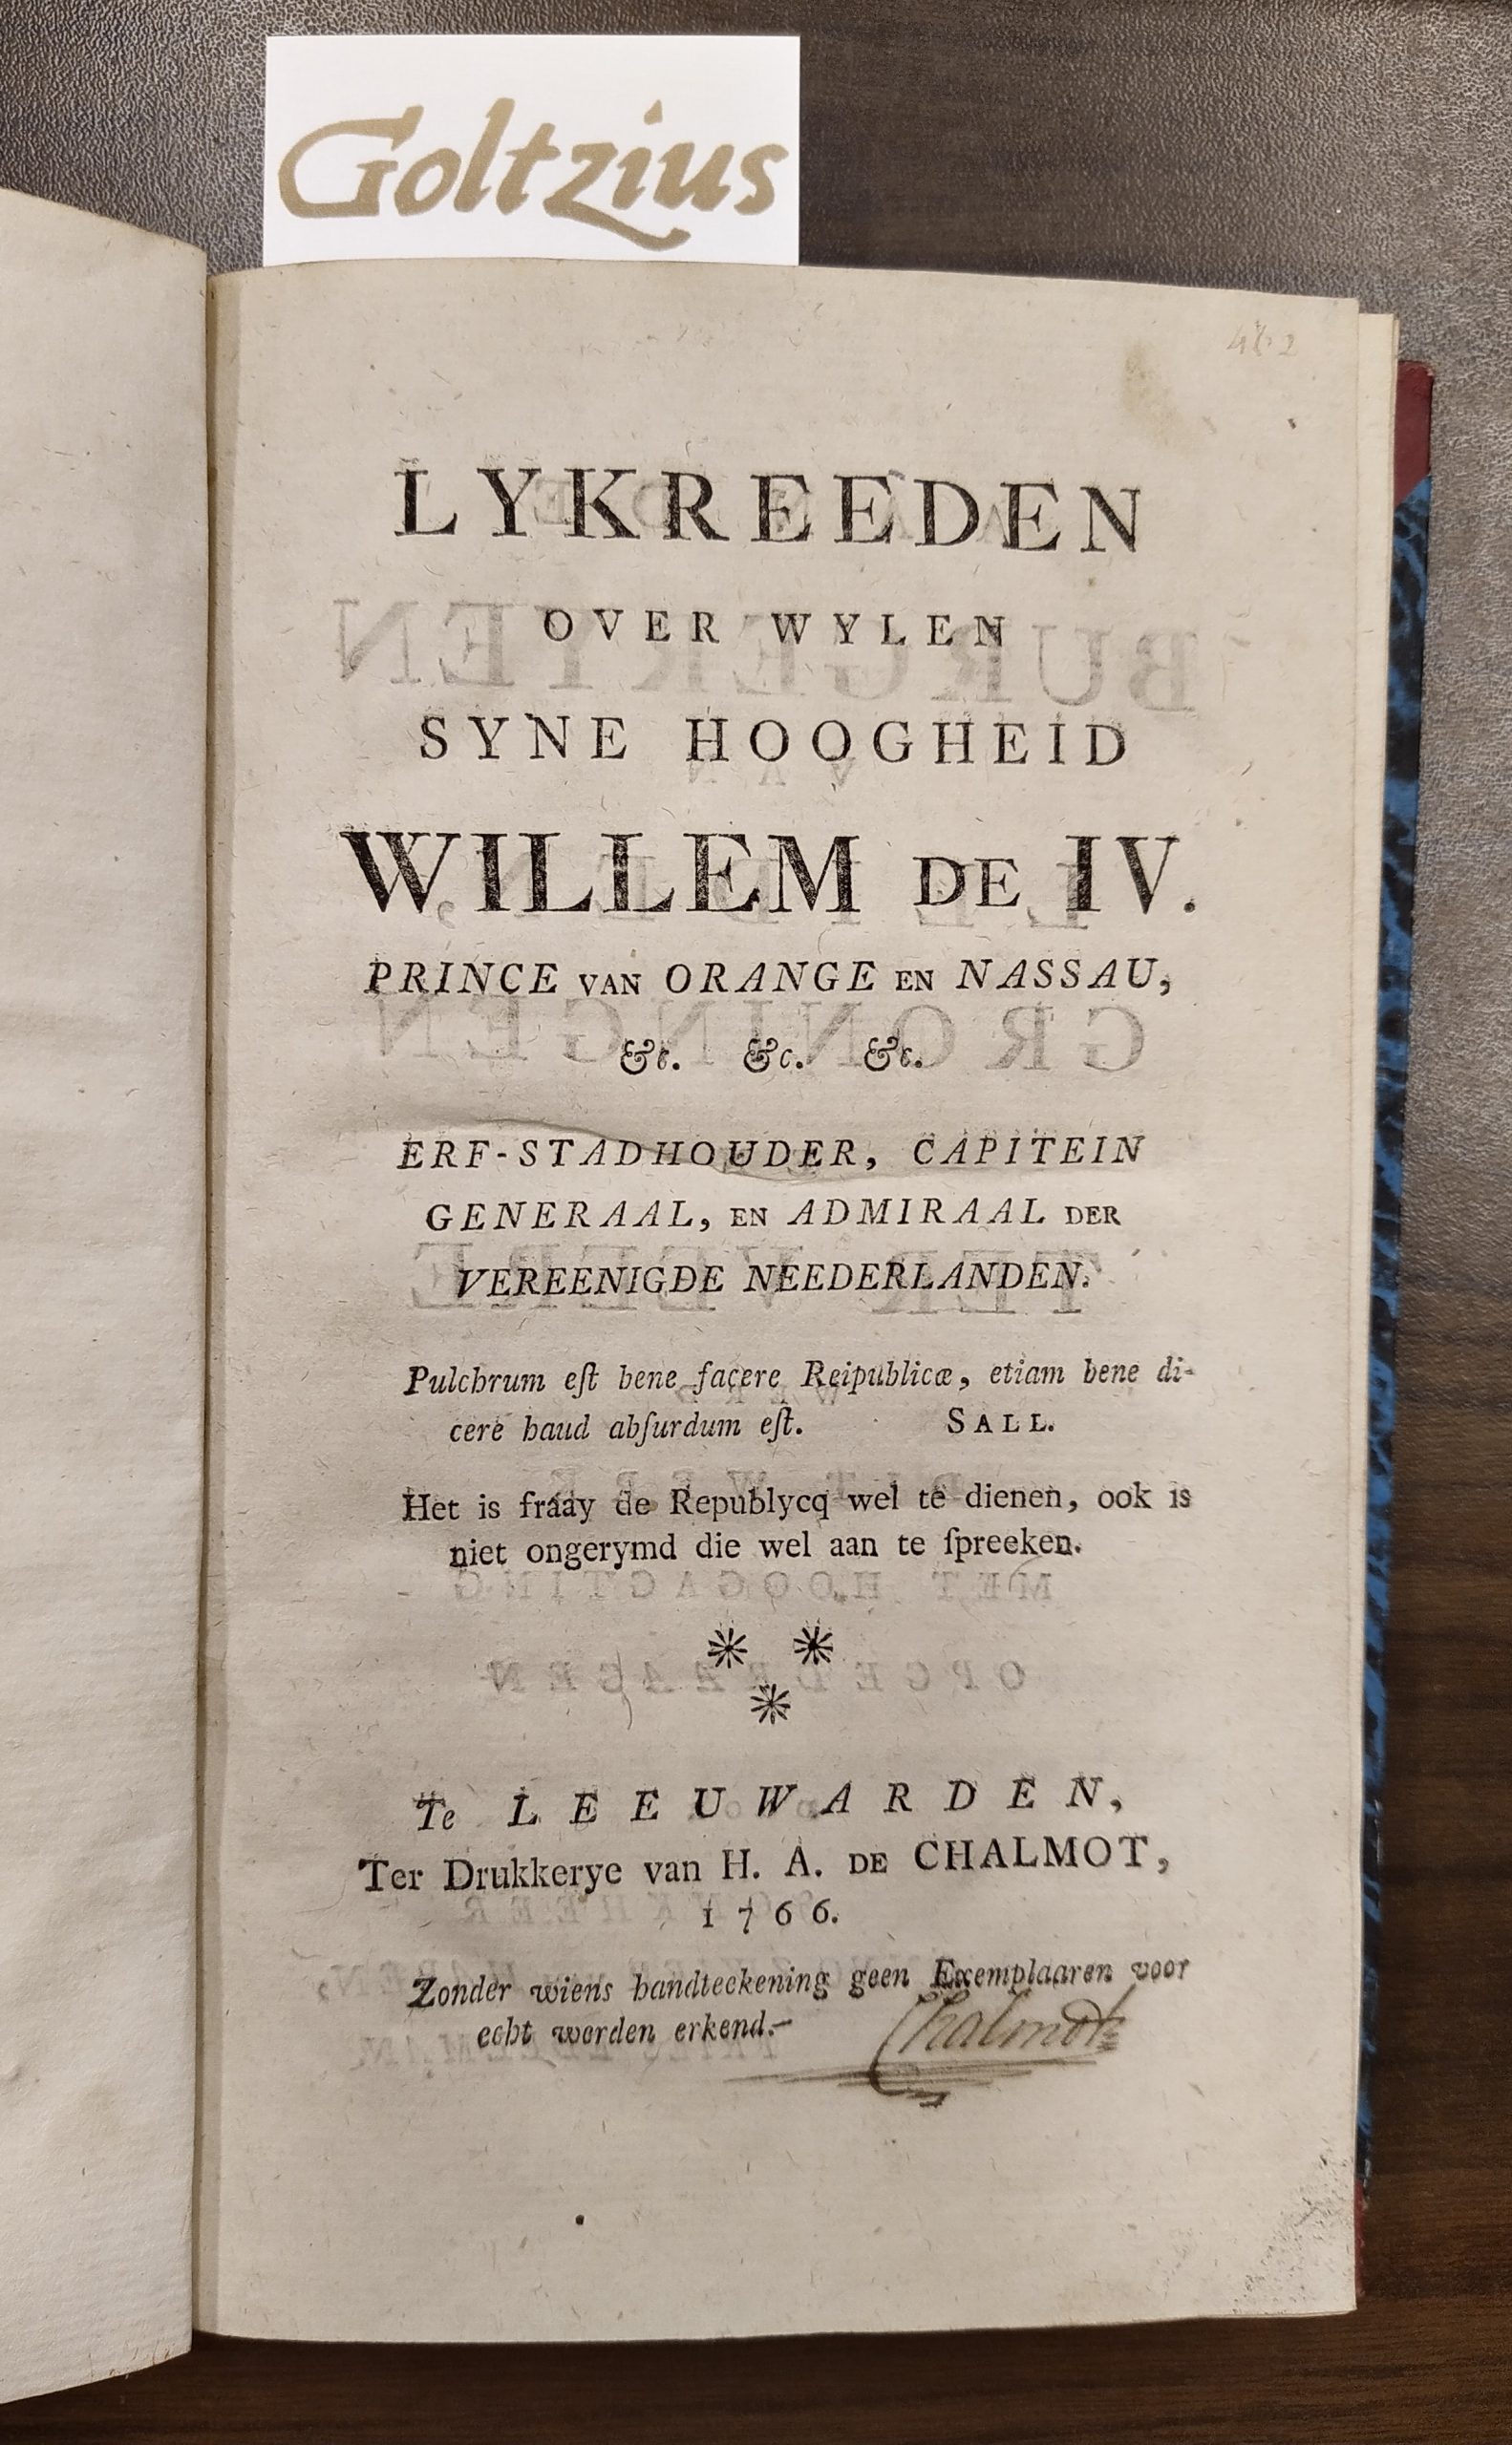 HAREN, ONNO ZWIER VAN, Lykreeden over wylen Syne Hoogheid Willem de IV. Prince van Orange en Nassau (...).